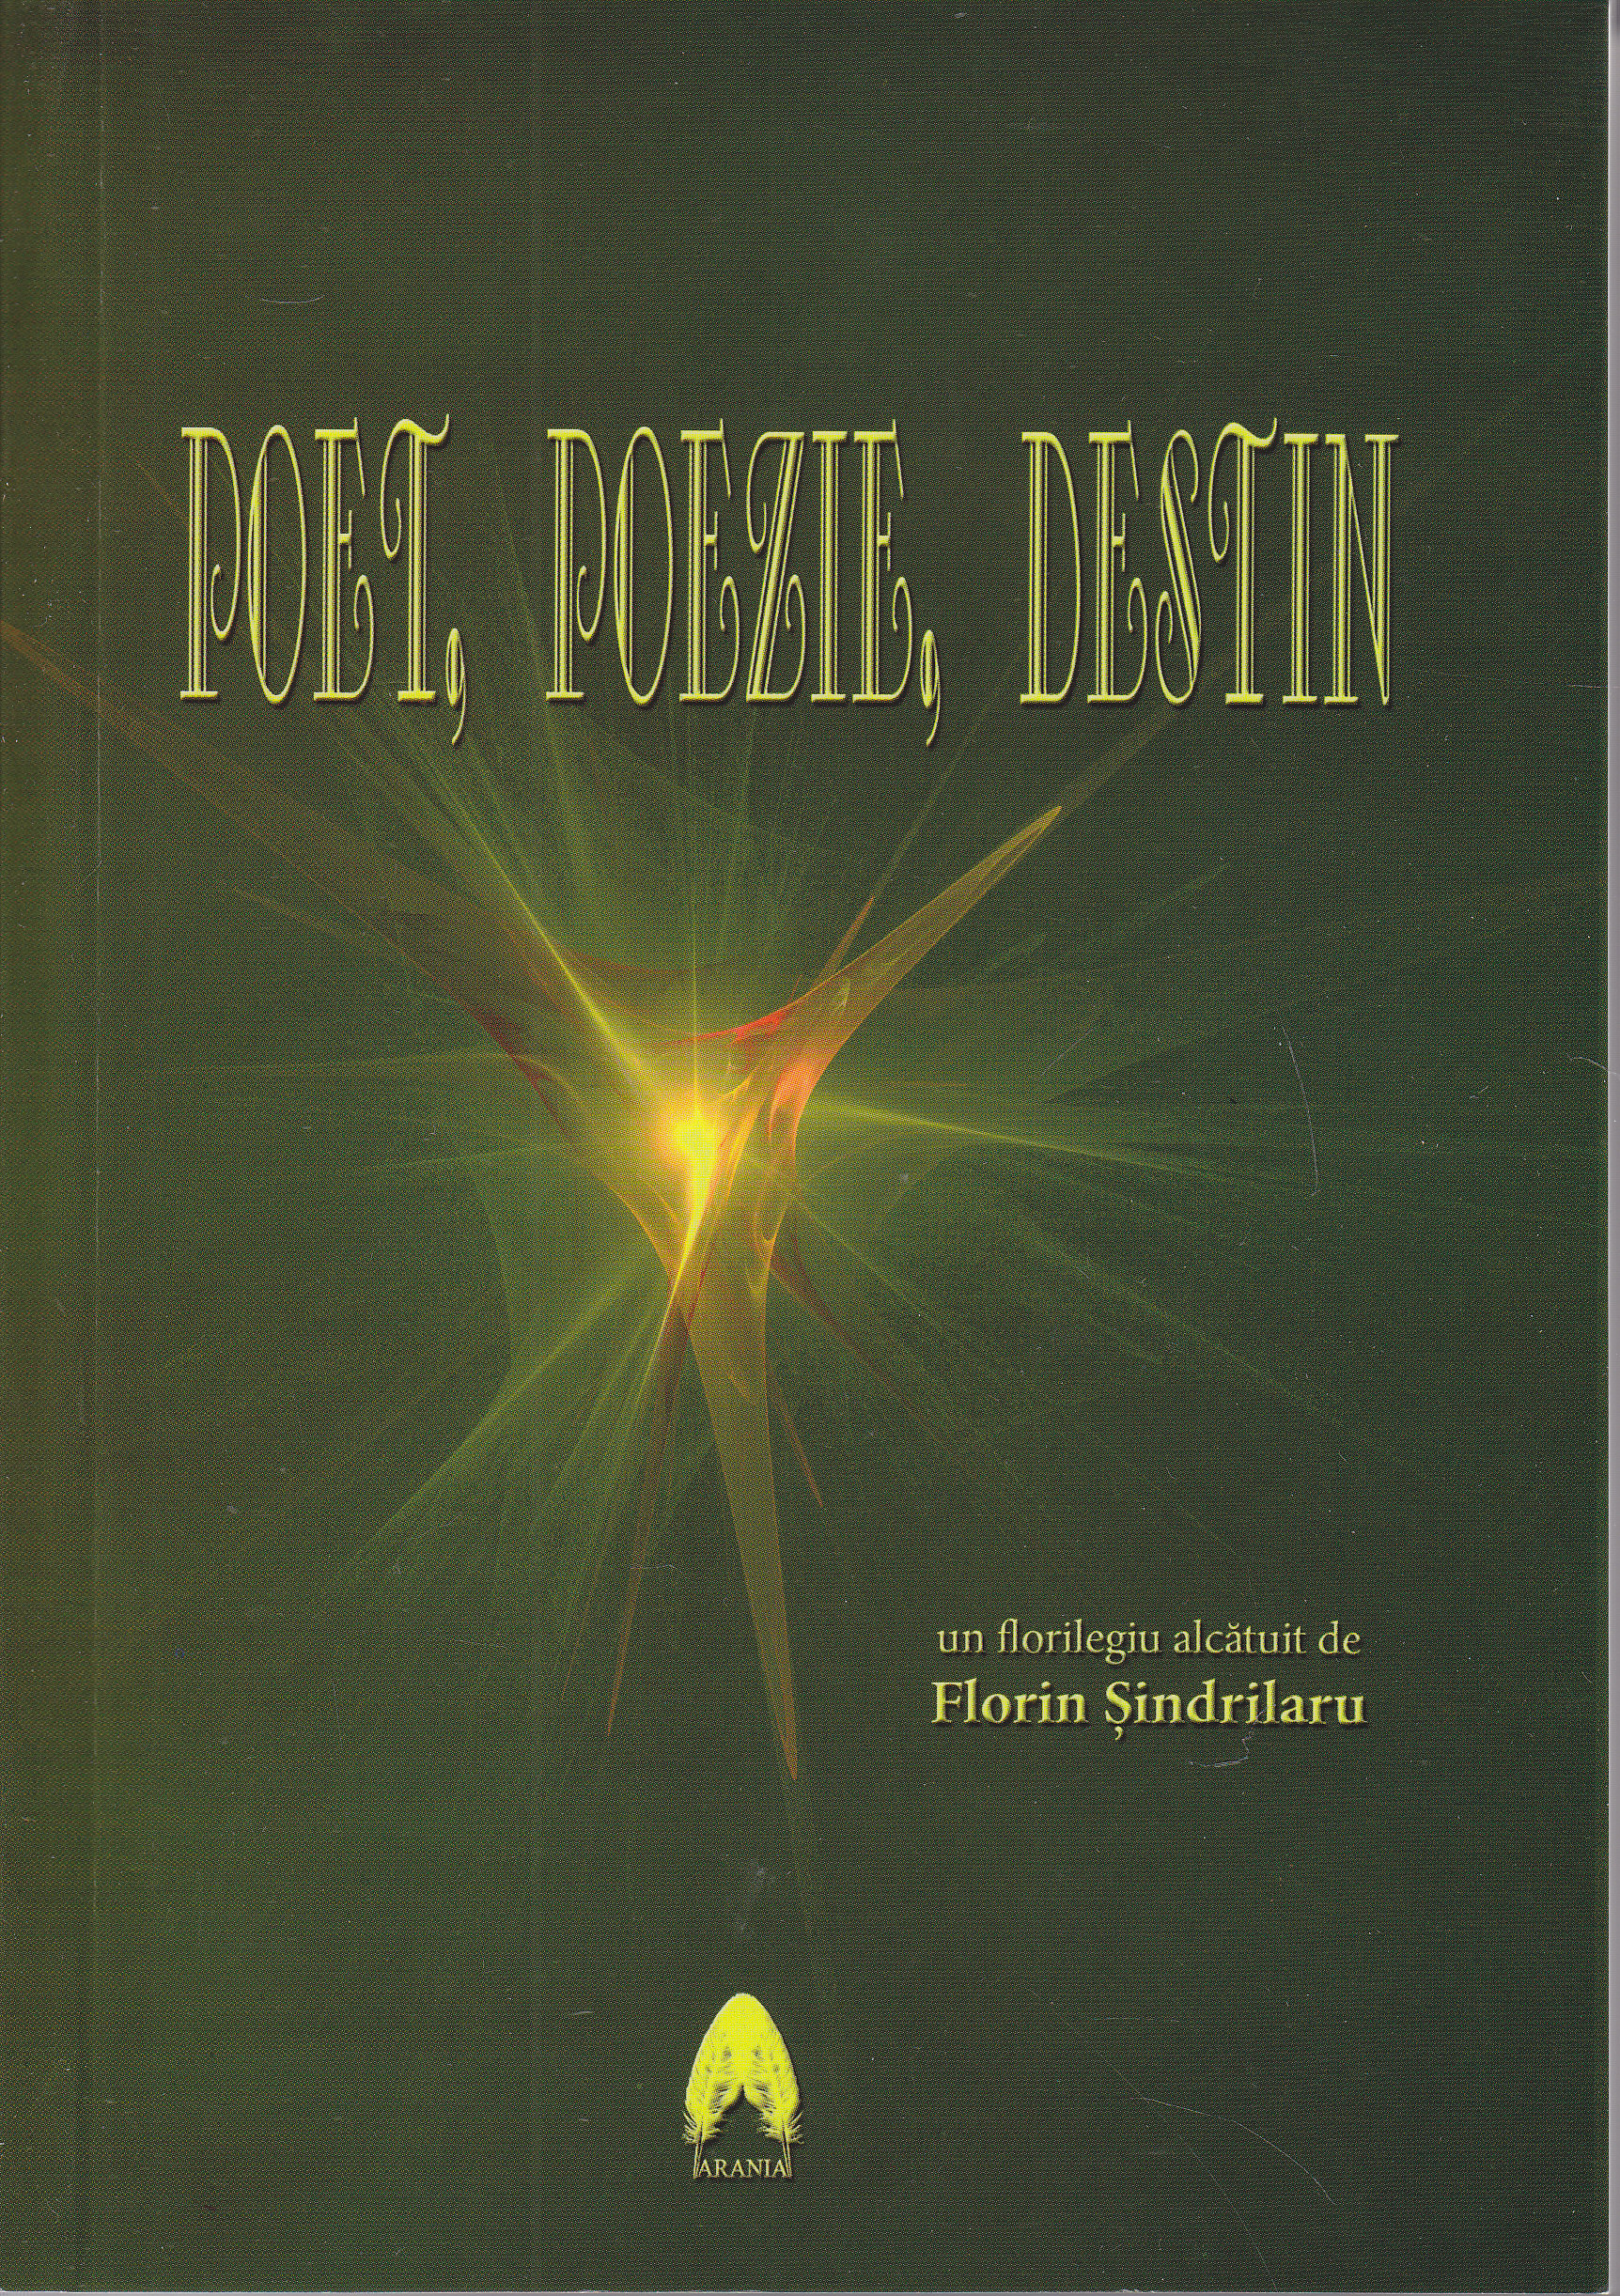 Poet, poezie, destin - Florilegiu alcatuit de Florin Sindrilaru